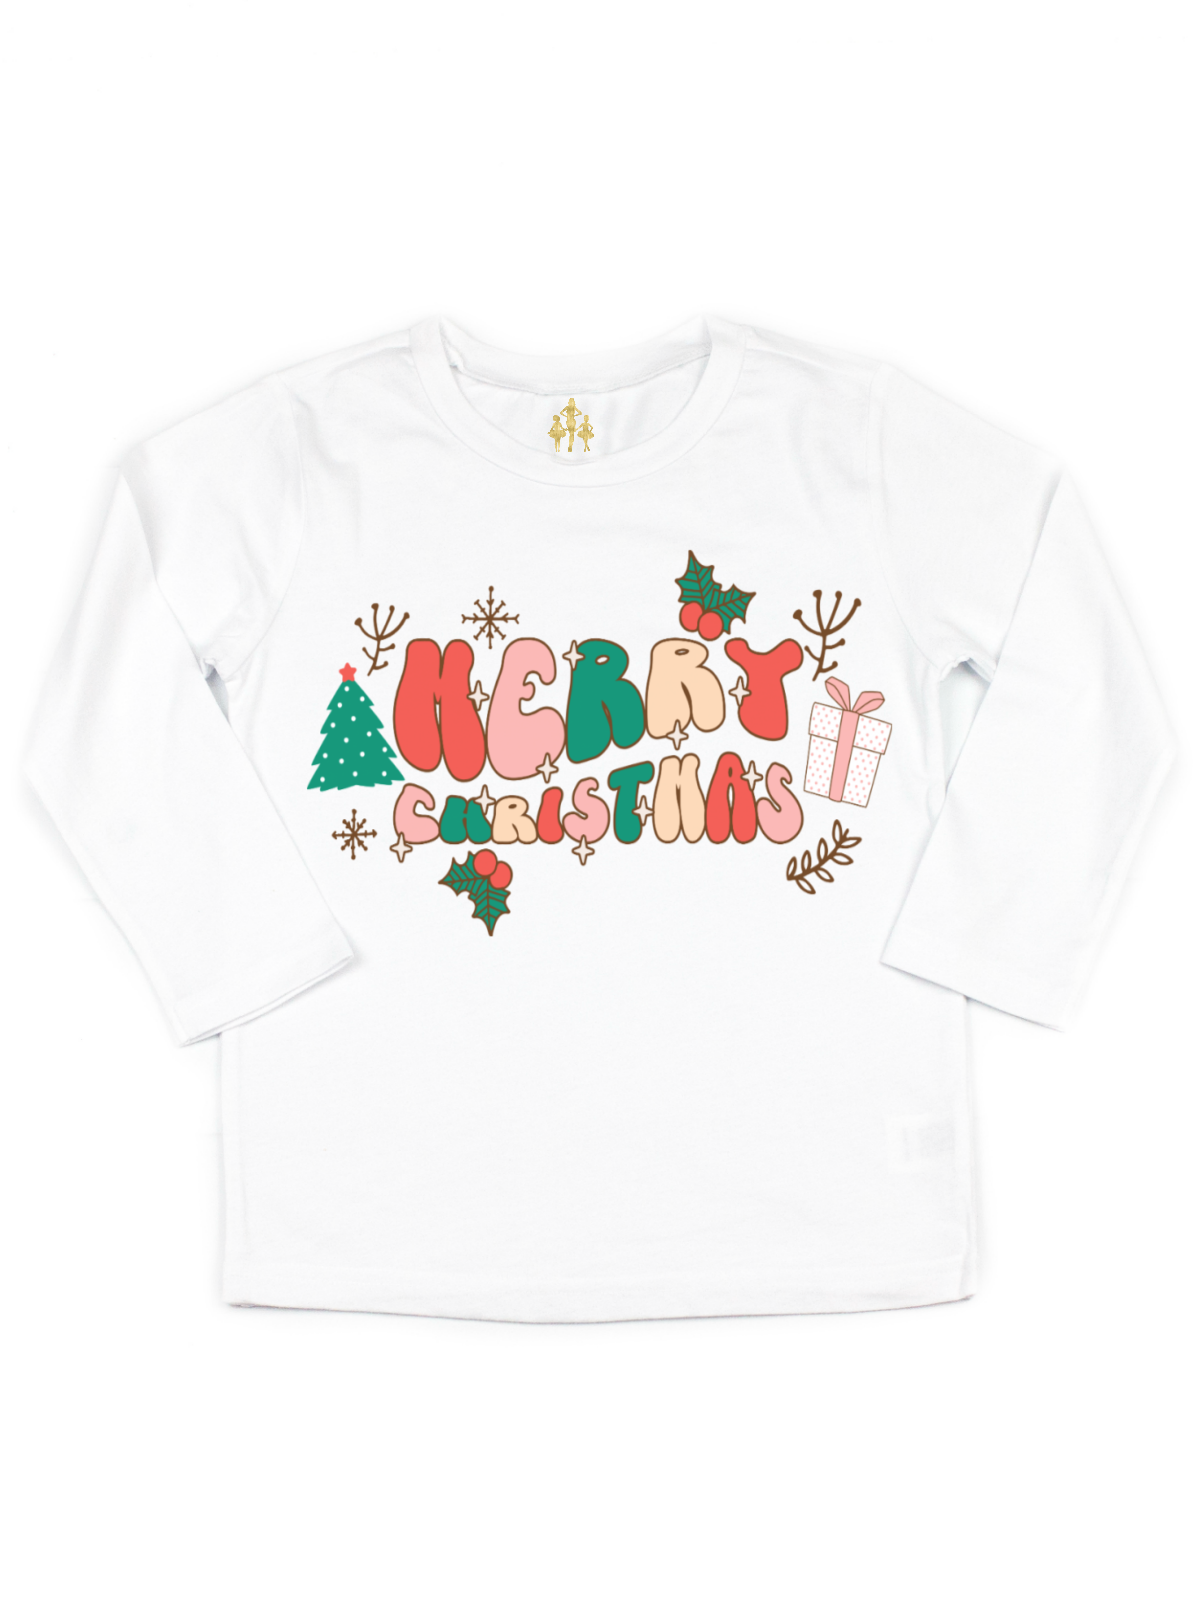 Merry Christmas Kids Retro Holiday TShirt